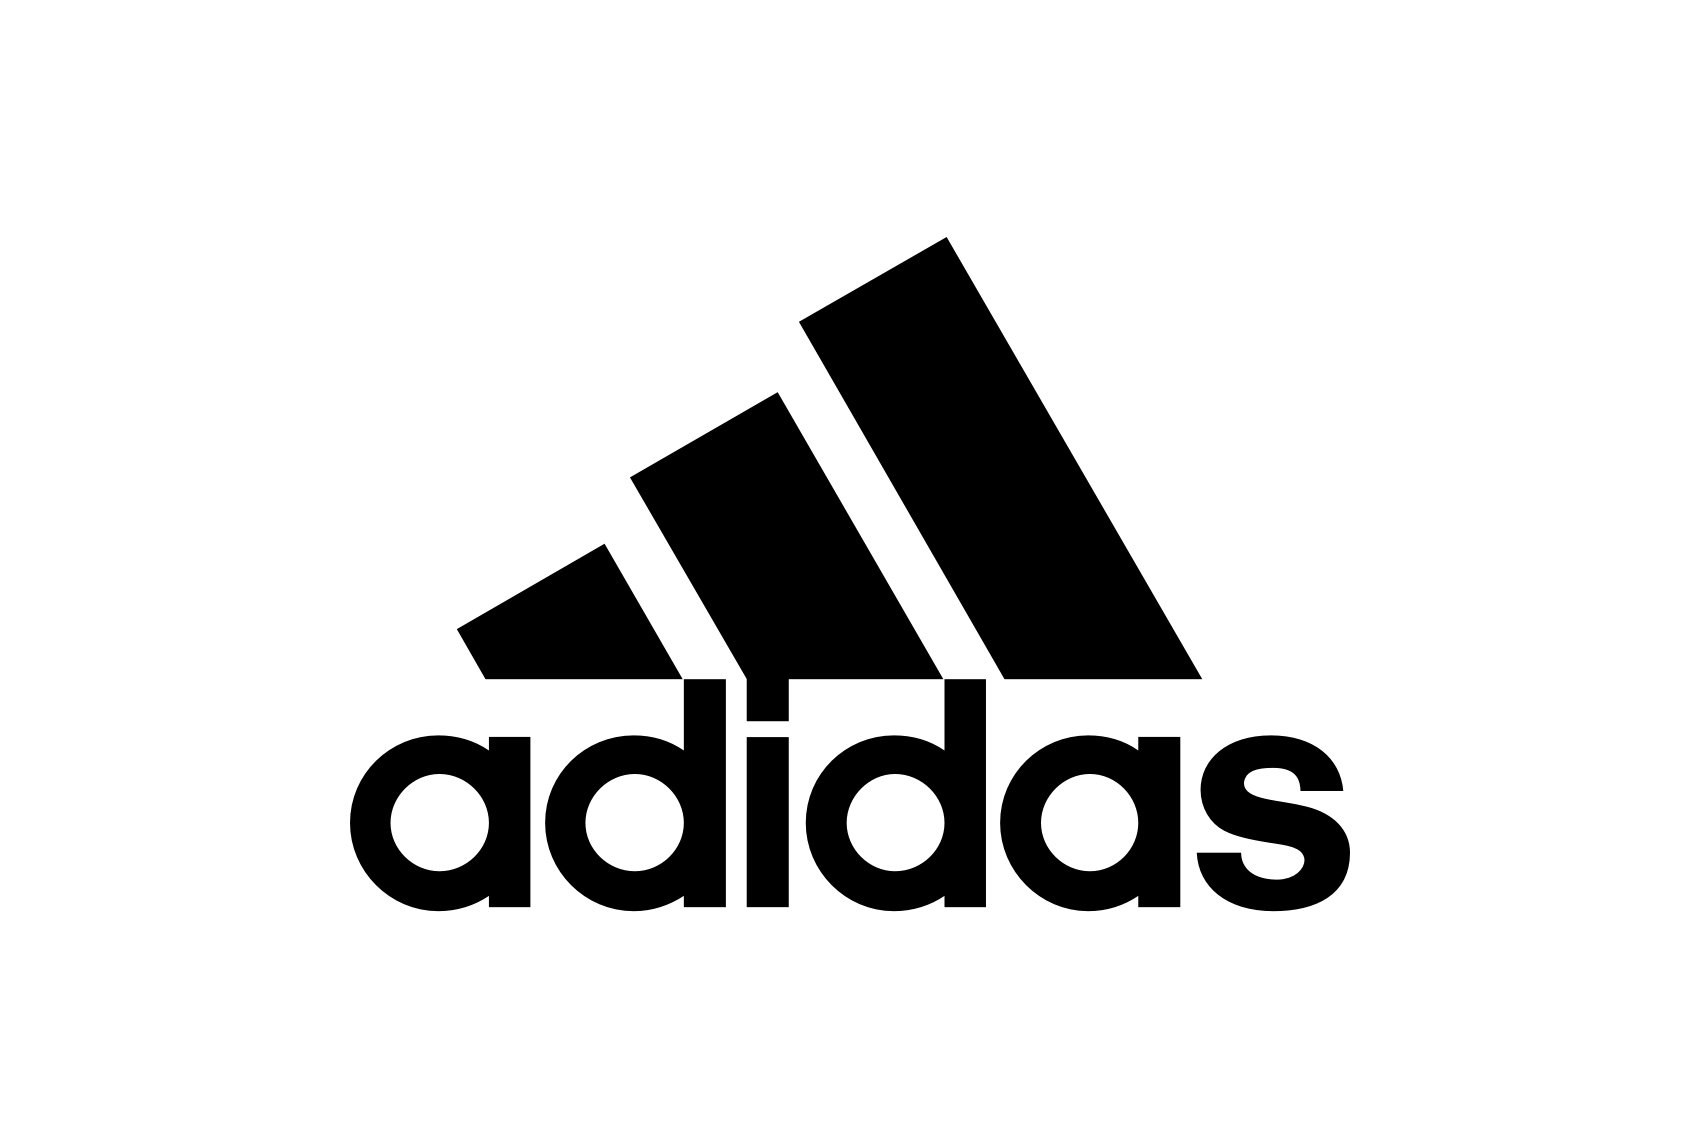 abstract-logo-adidas